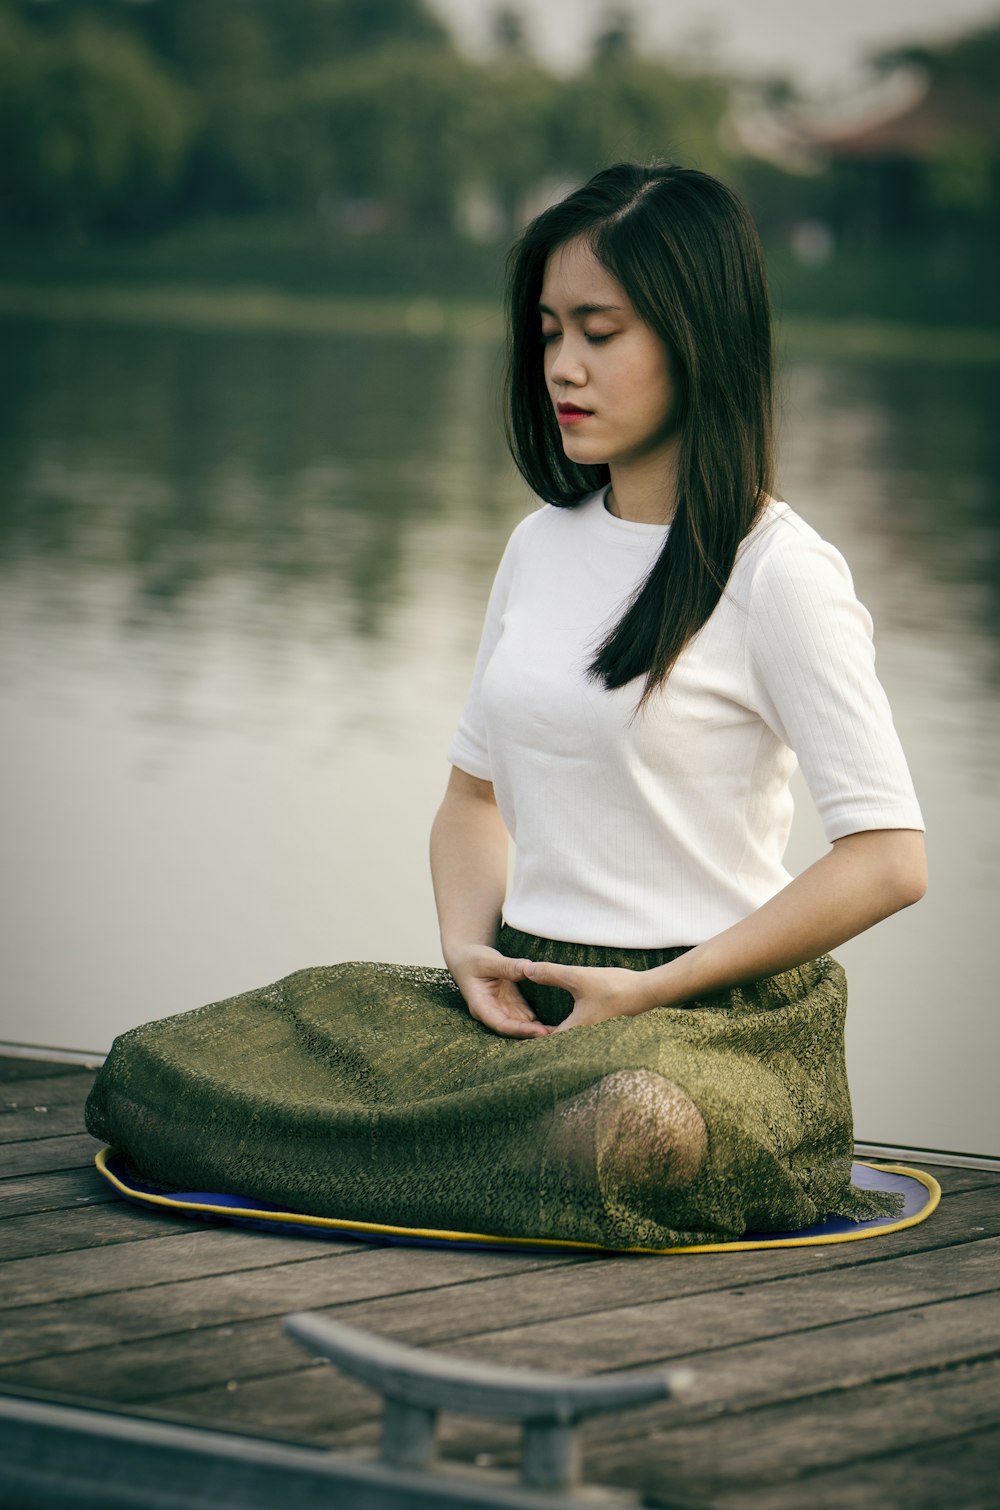 Mantra Meditation For Mental Health: Benefits